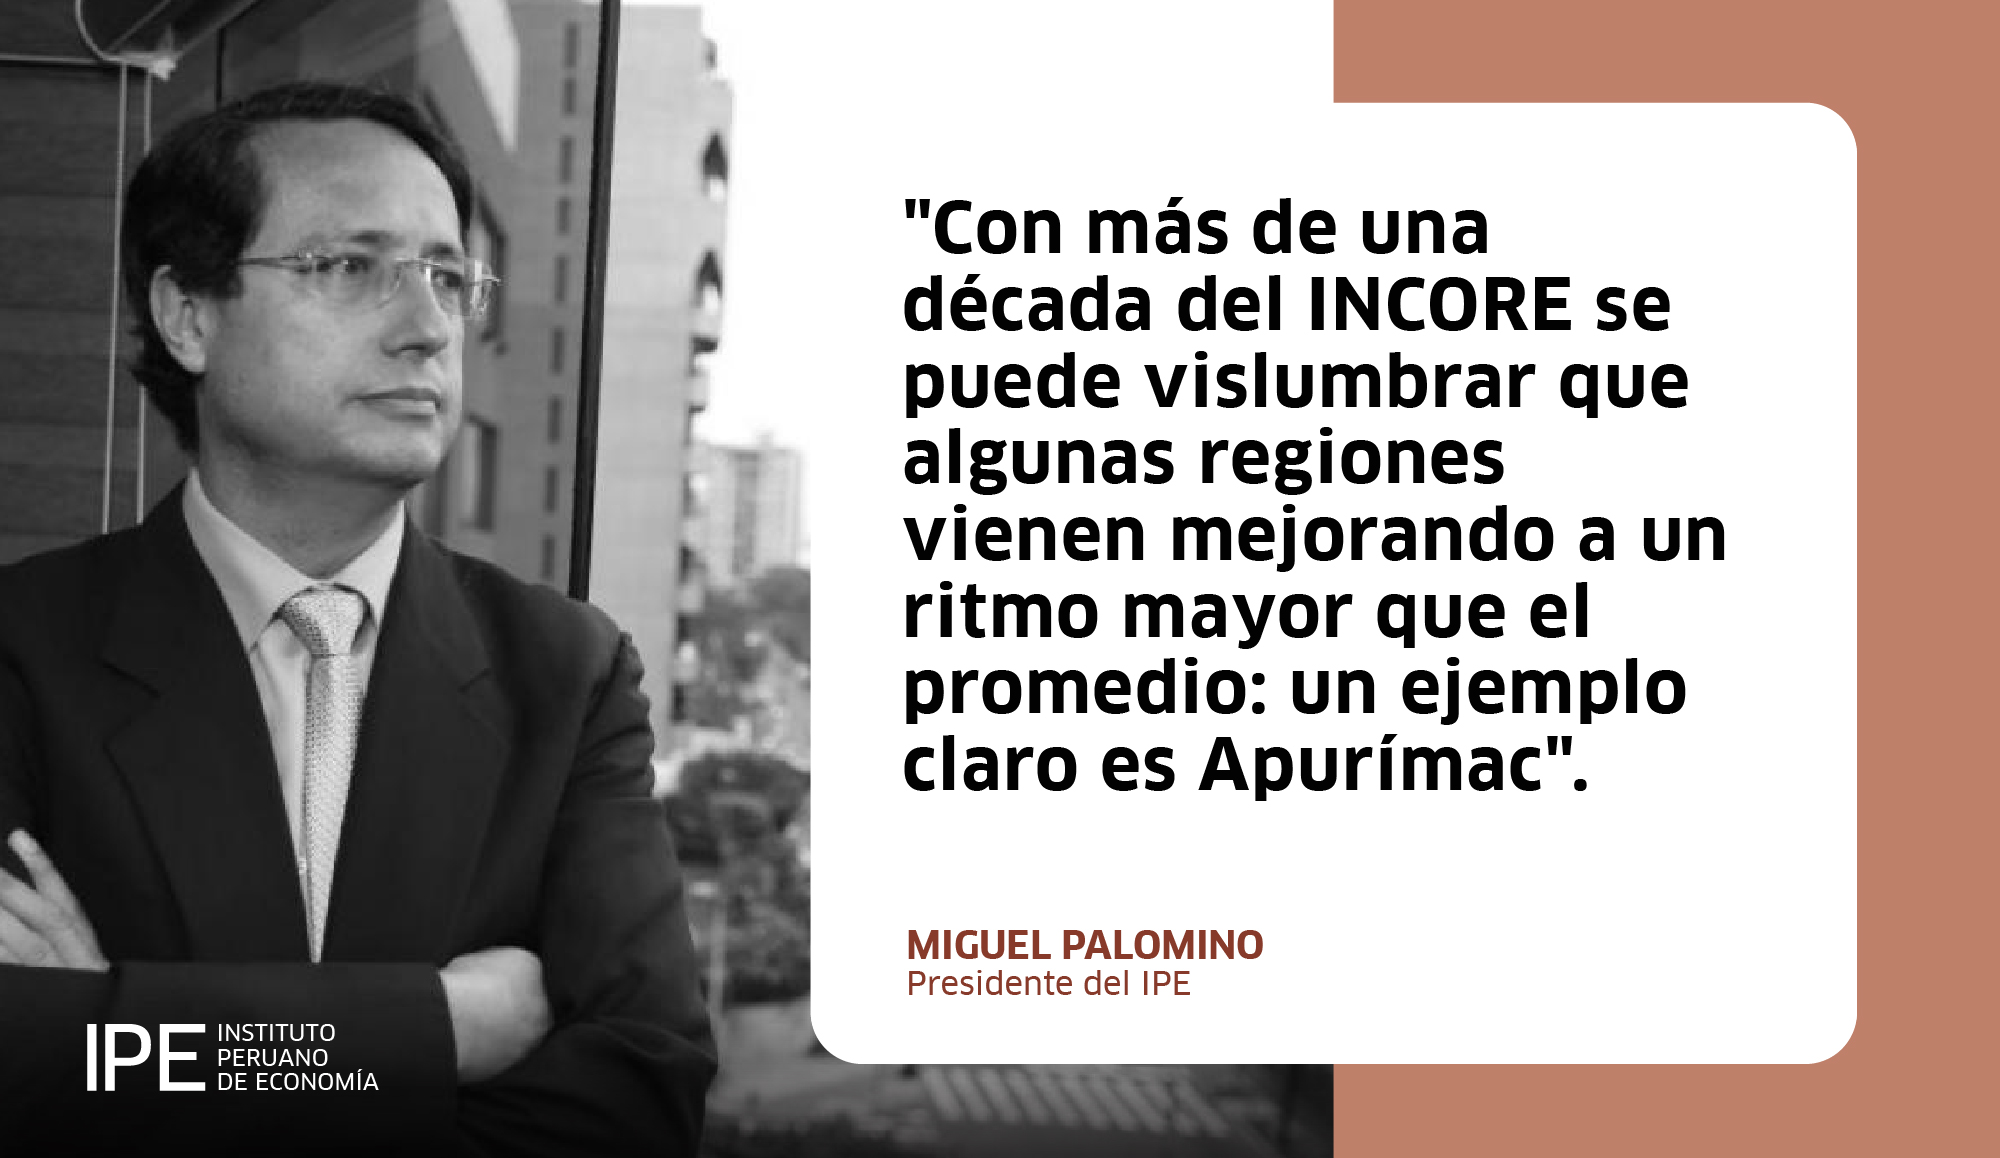 competitividad, competitividad regional, incore, Índice de competitividad regional, Miguel Palomino